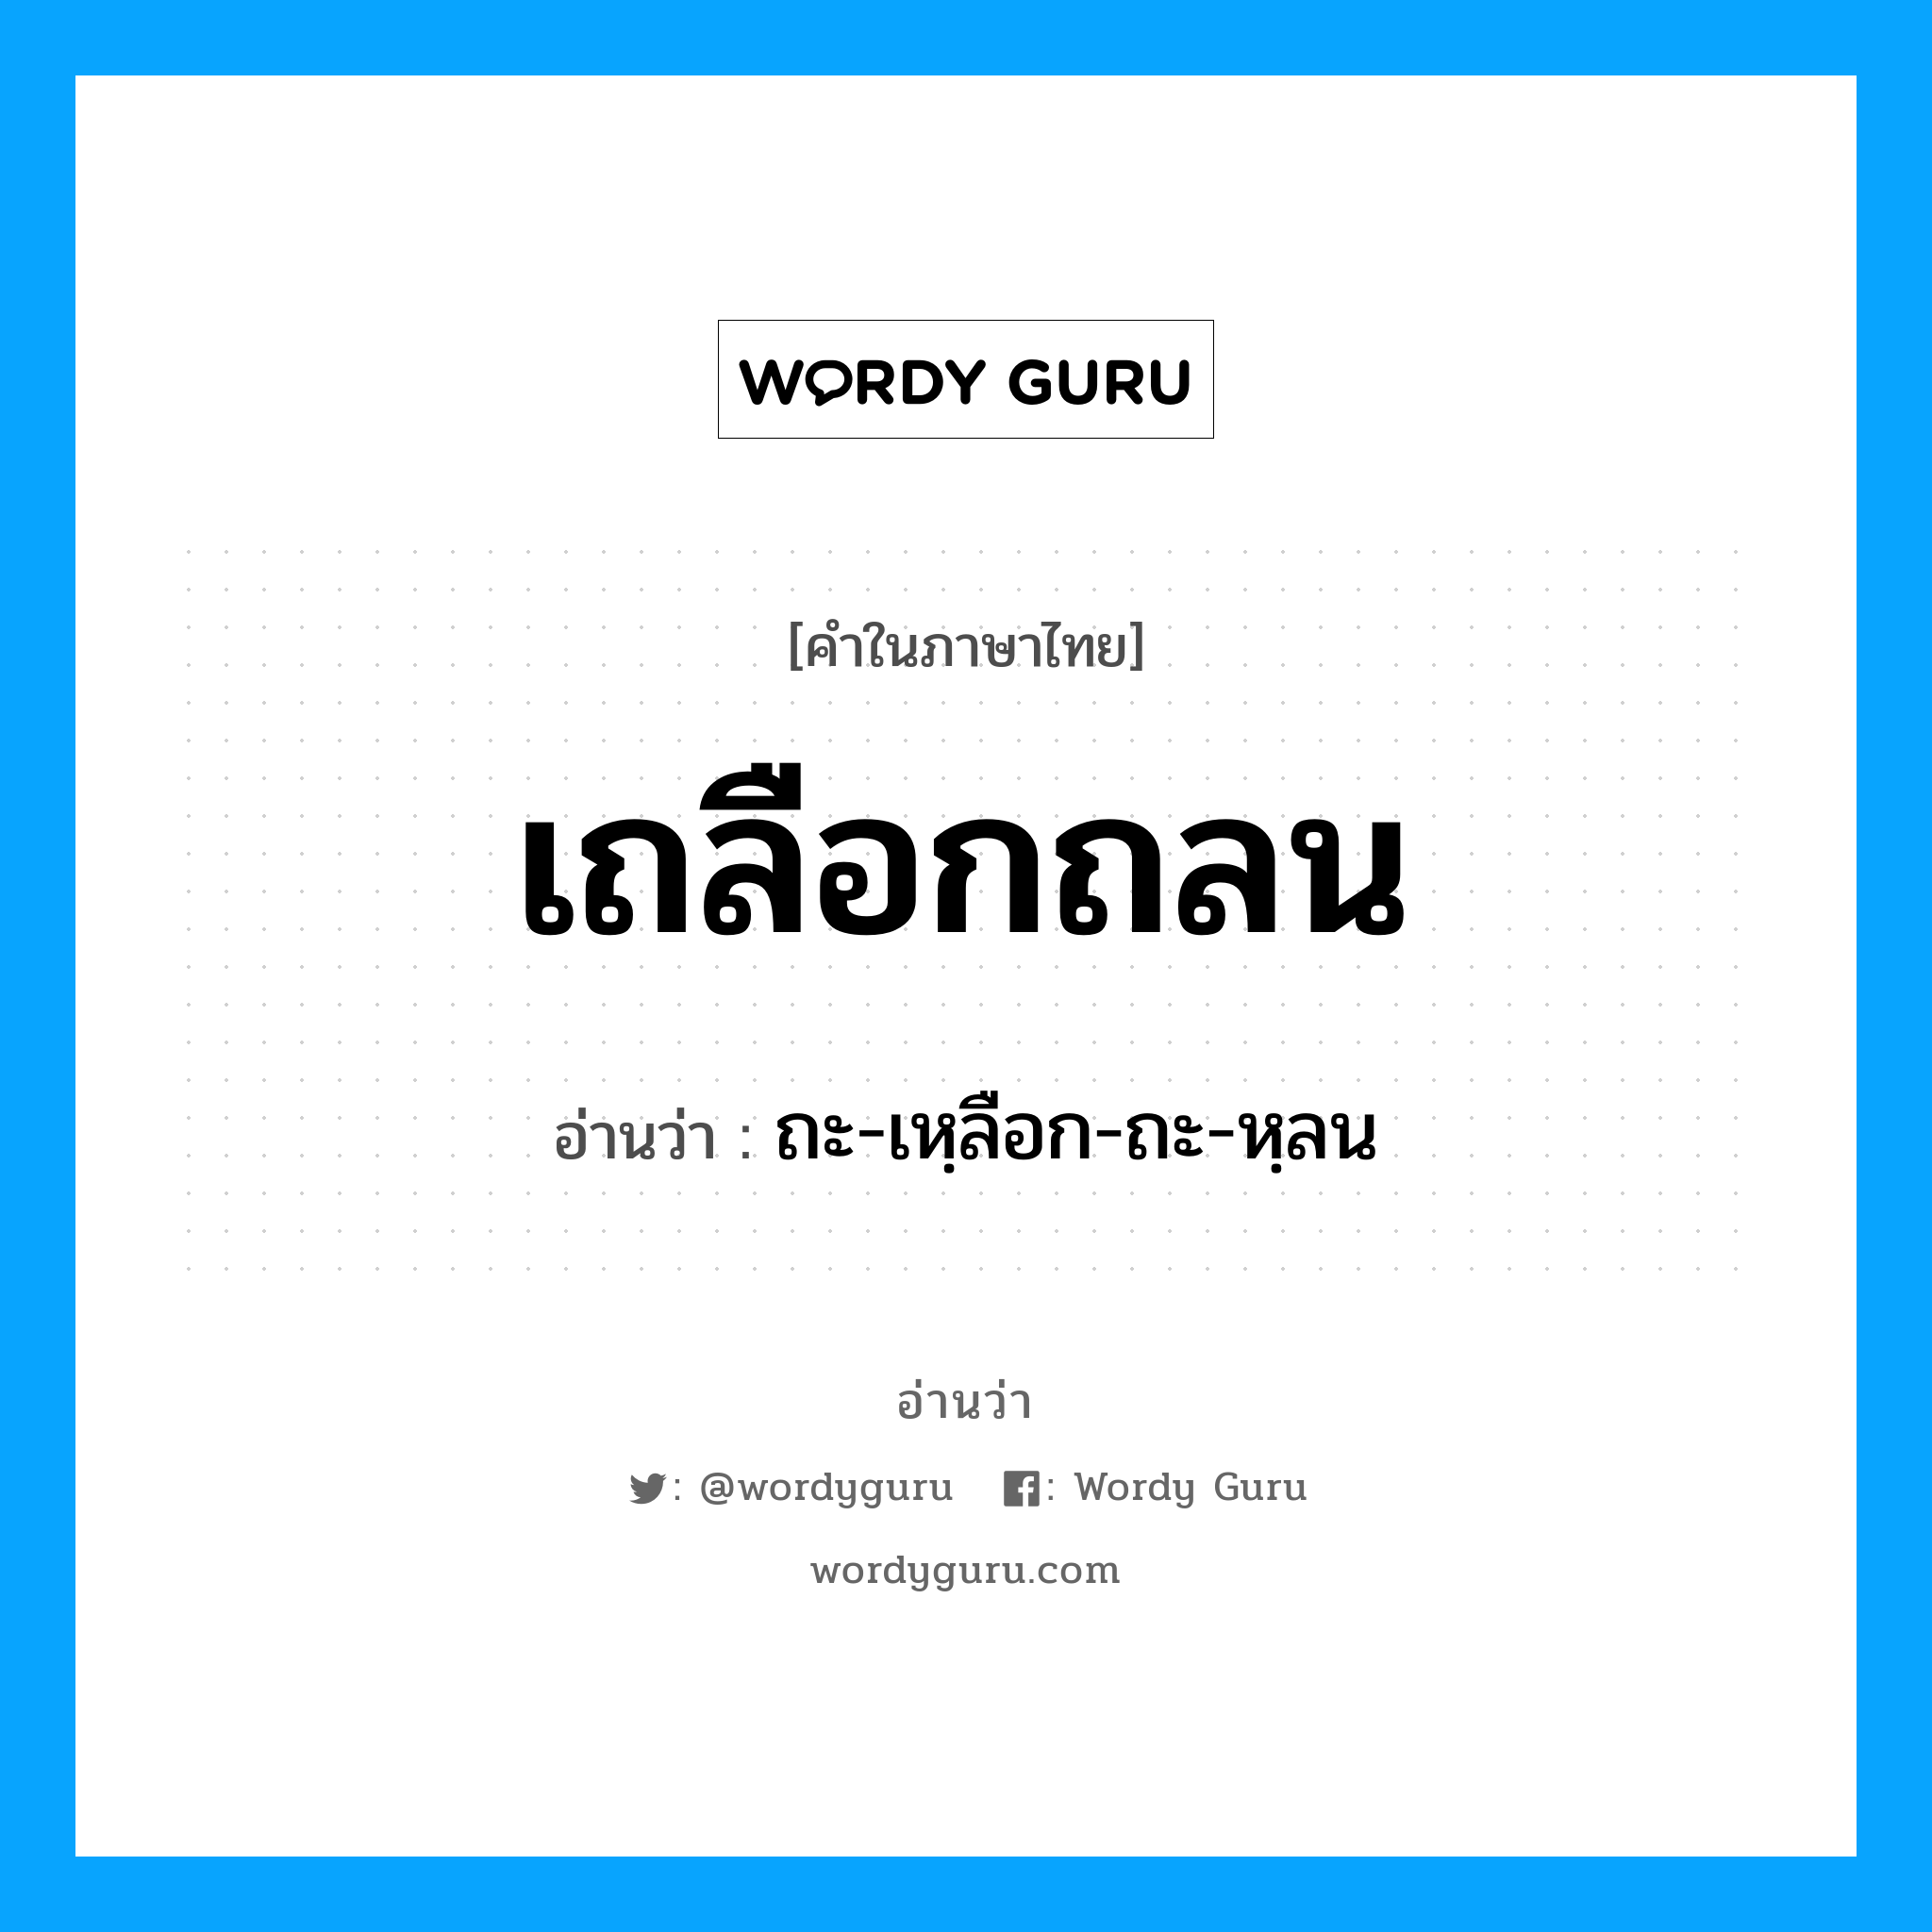 ถะ-เหฺลือก-ถะ-หฺลน เป็นคำอ่านของคำไหน?, คำในภาษาไทย ถะ-เหฺลือก-ถะ-หฺลน อ่านว่า เถลือกถลน